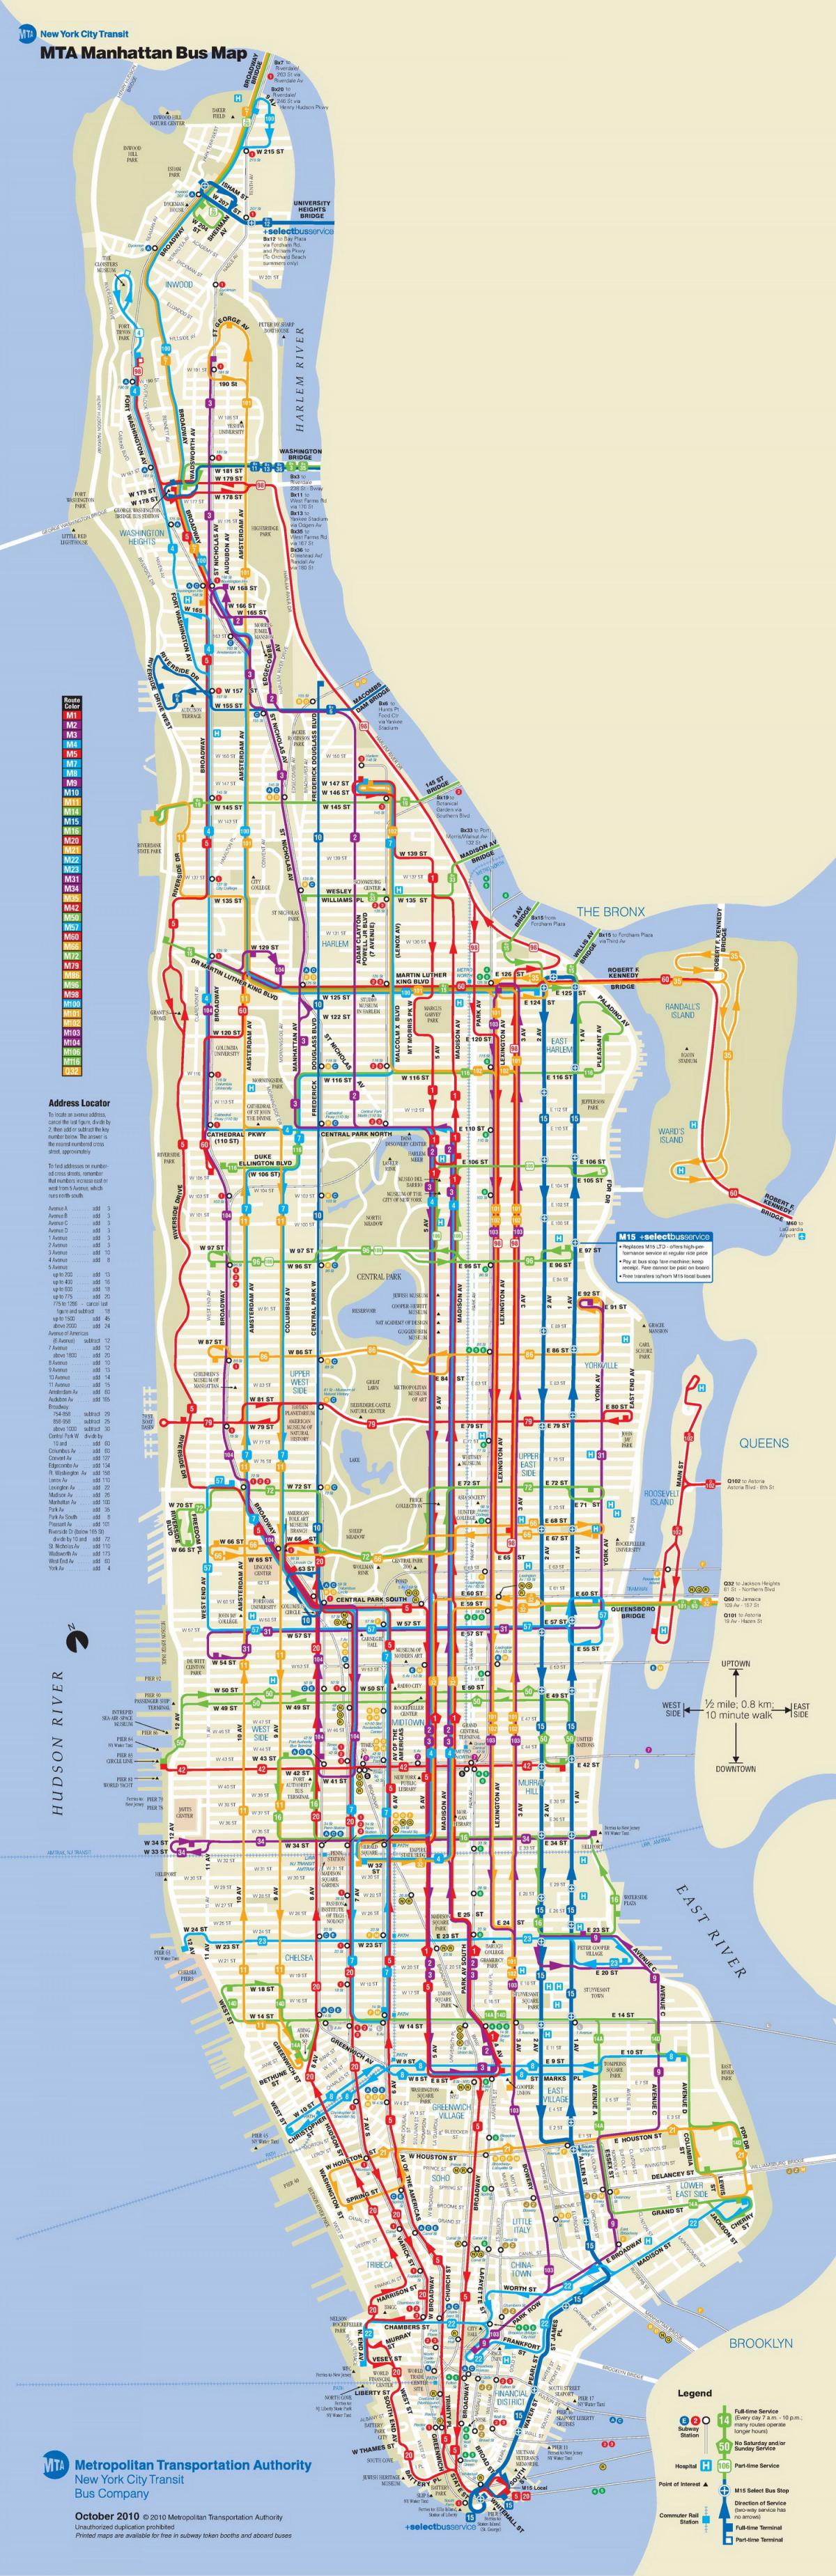 MTA bus mapa manhattan